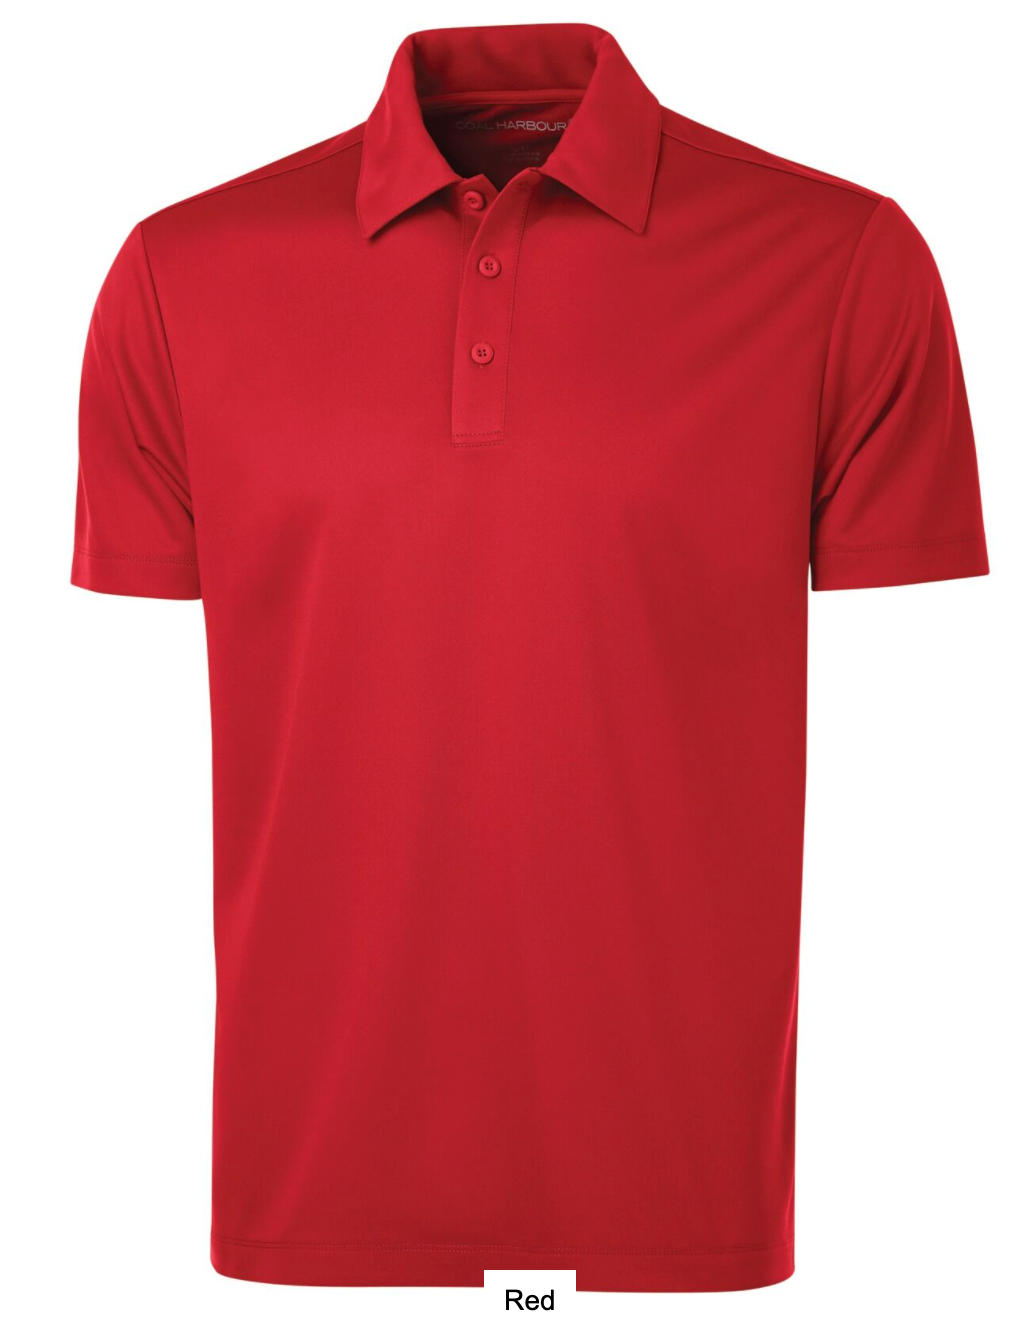 Golf Shirt - Men's